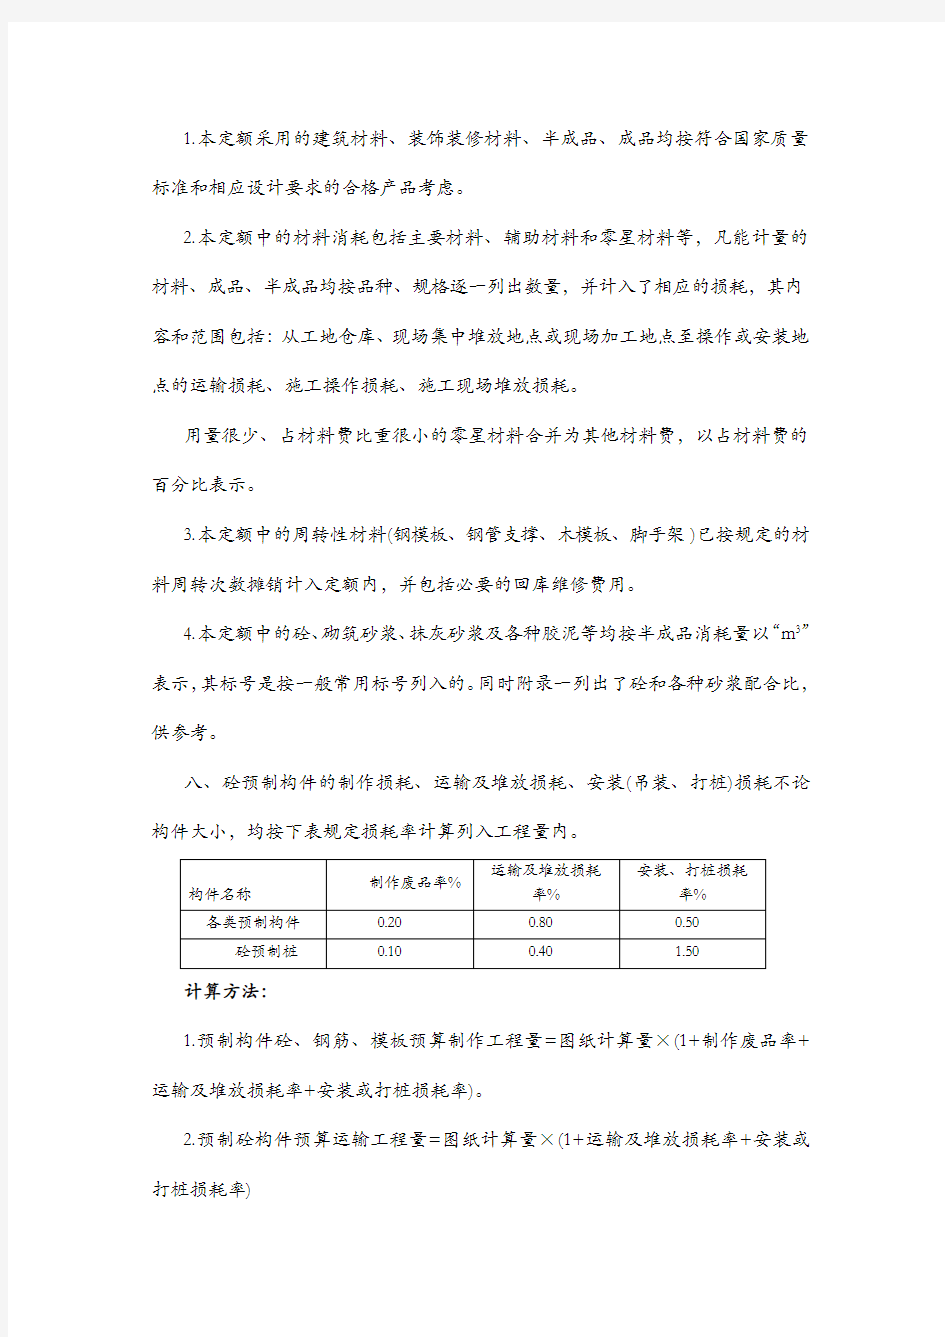 2004年《陕西省建筑 装饰工程消耗量定额》